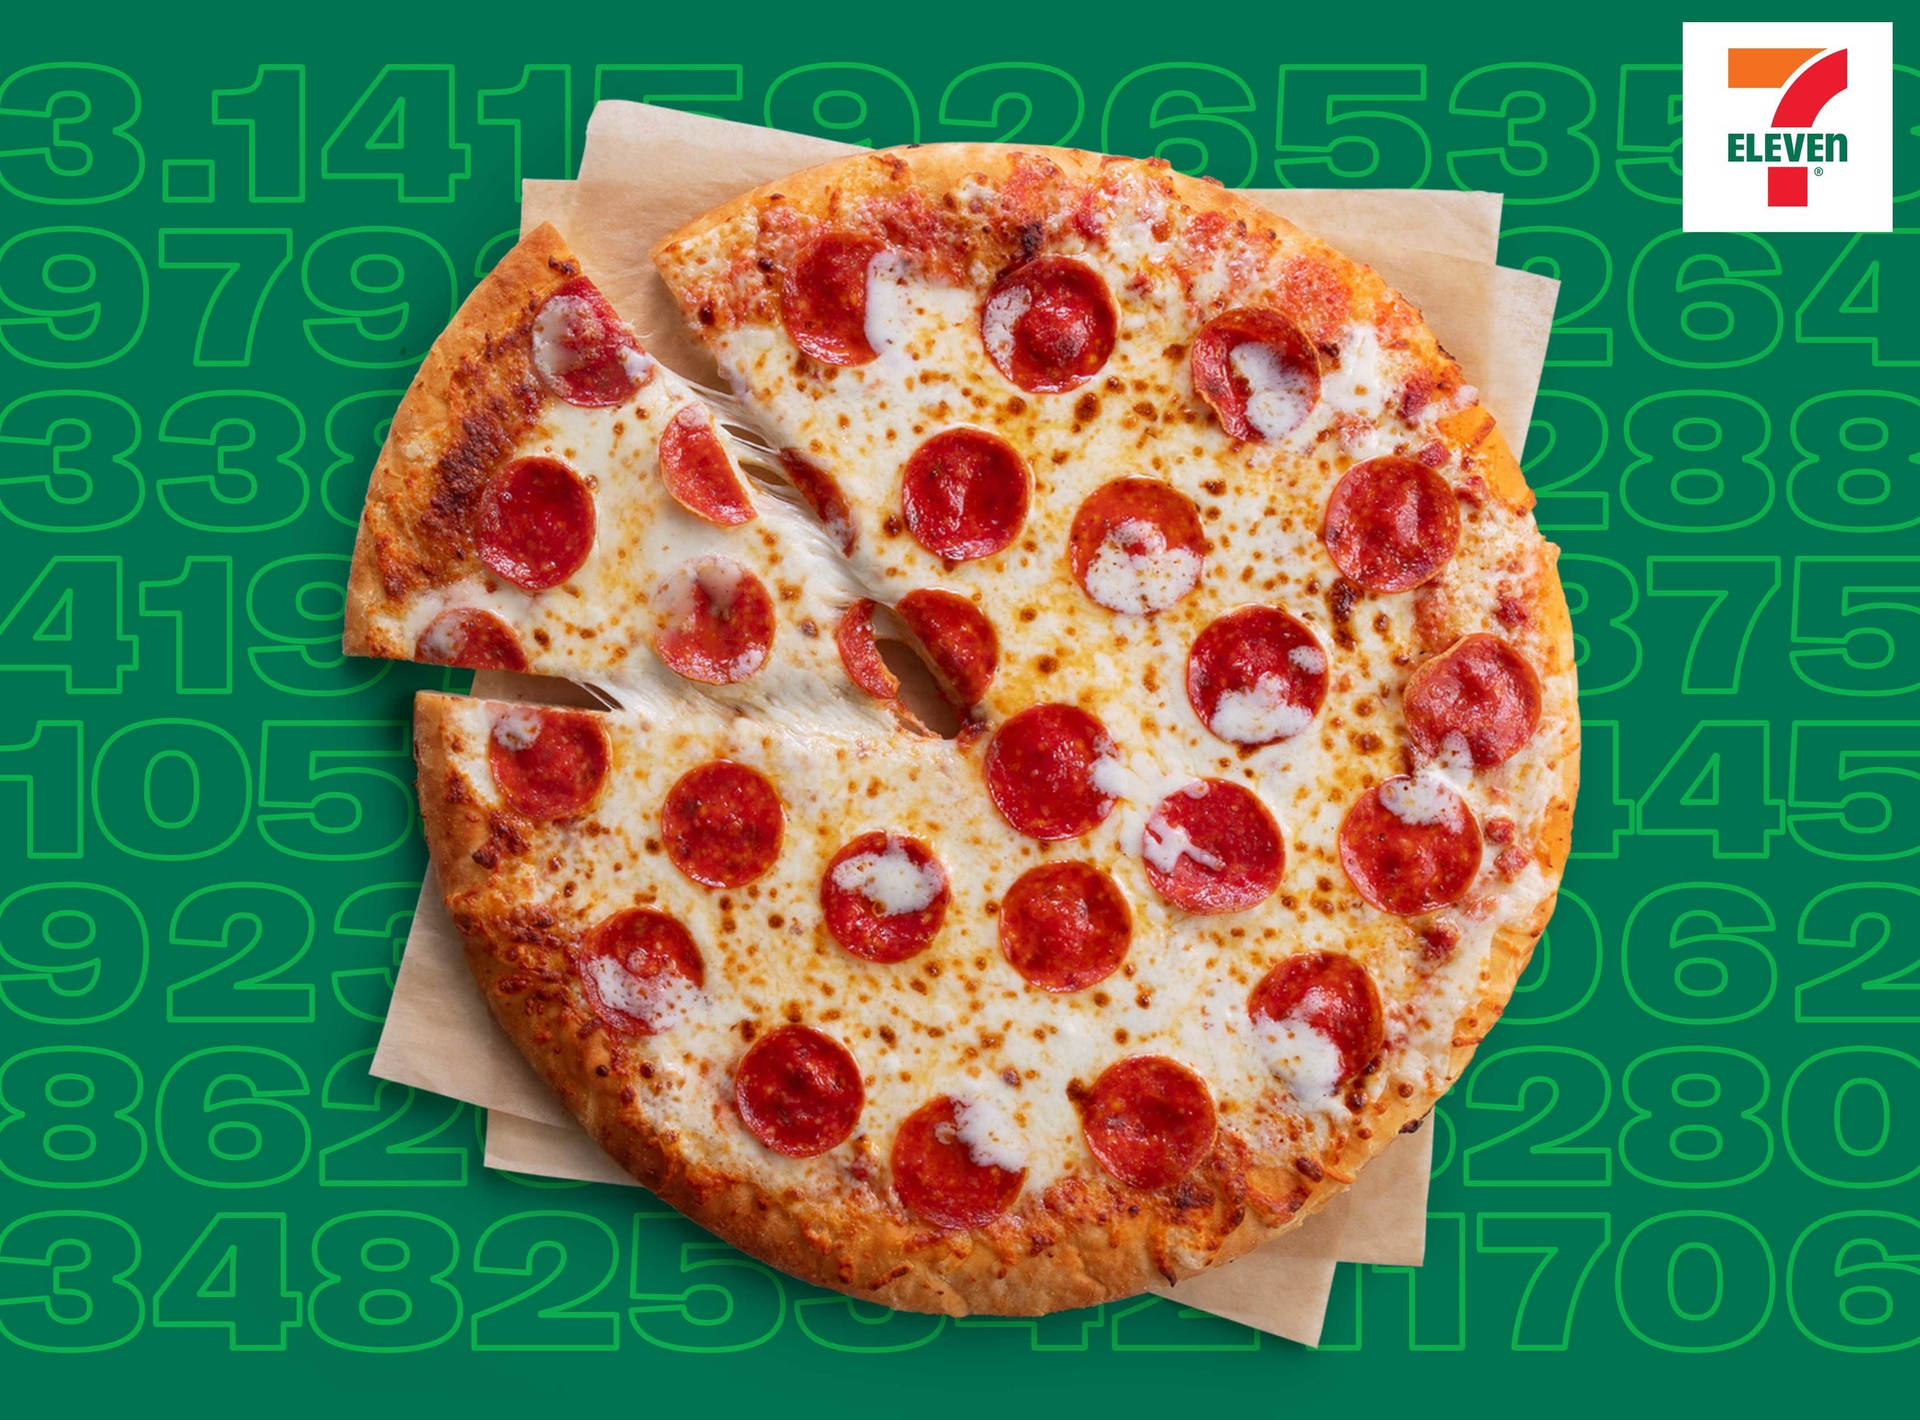 7 Eleven Pepperoni-pizza Wallpaper